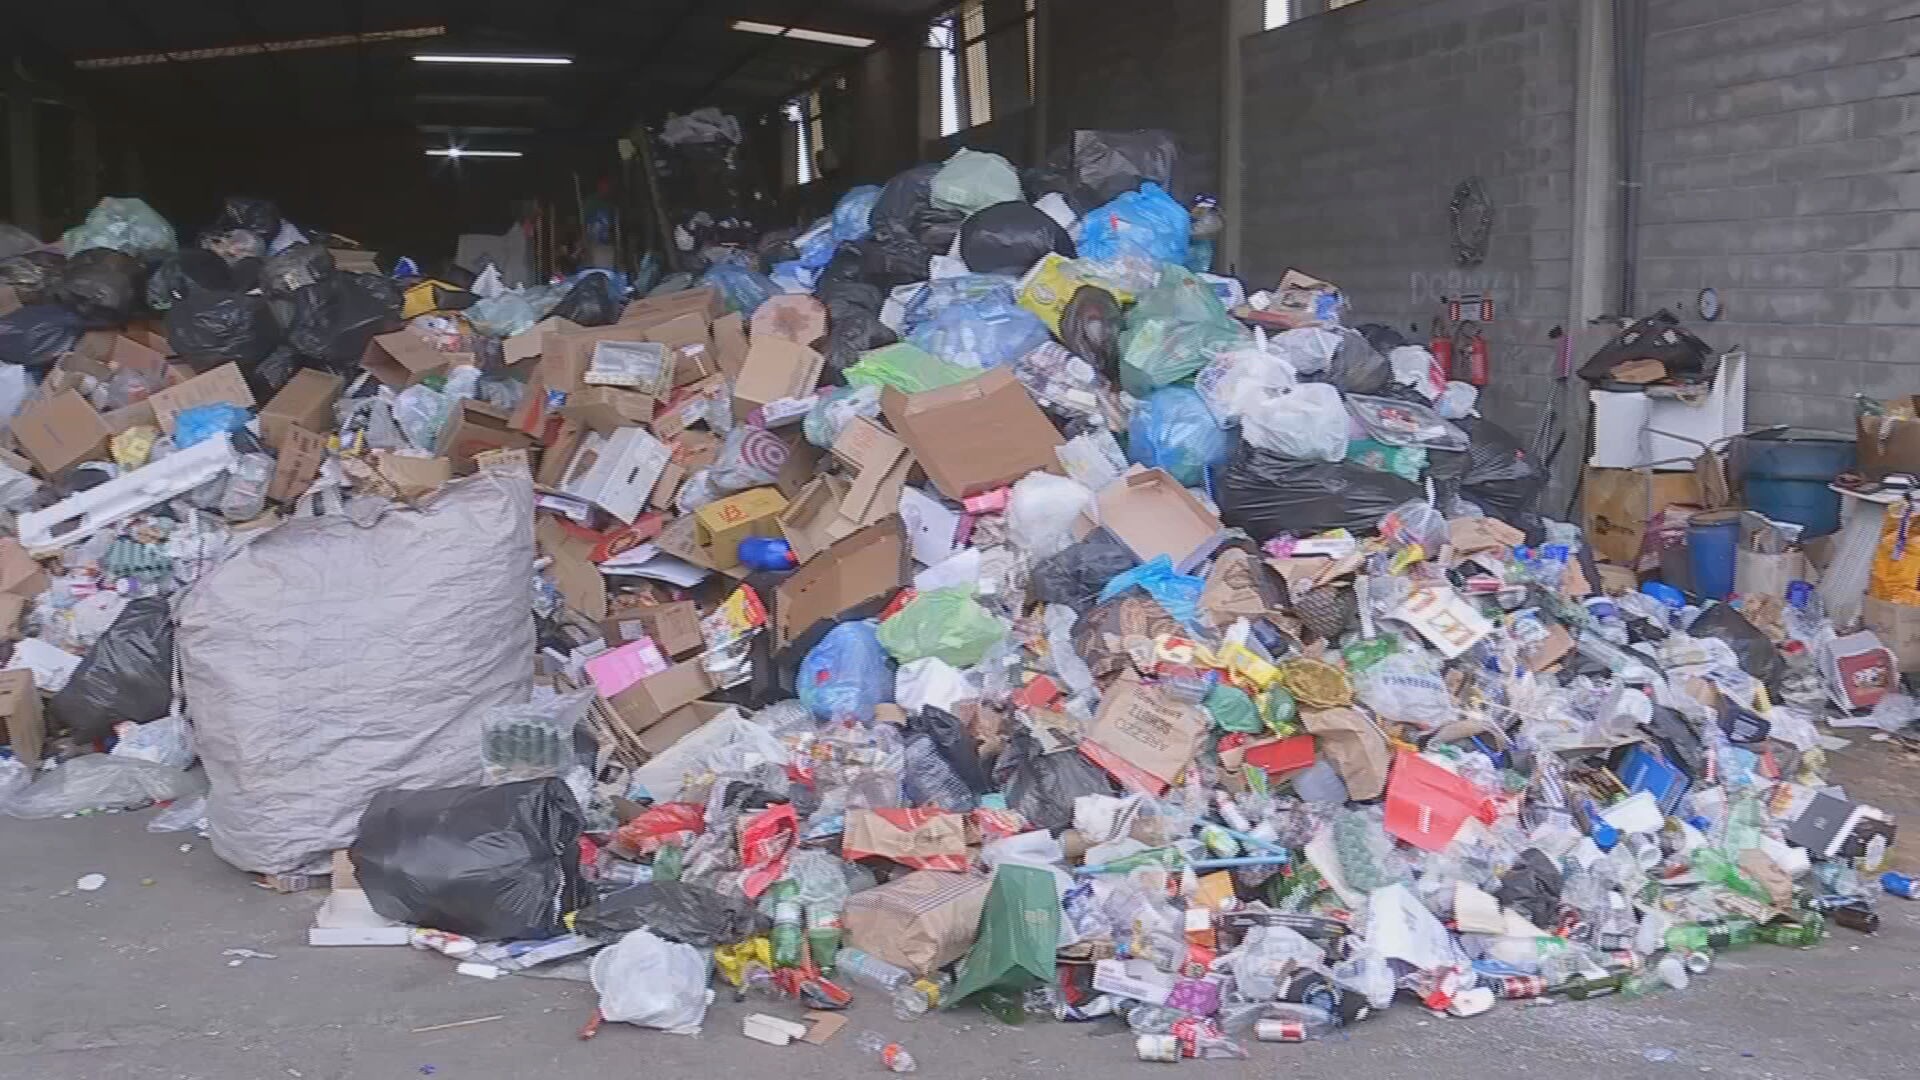 Cooperativas de reciclagem de Sorocaba enfrentam dificuldades por falta de verbas e queda no valor de materiais: 'Não conseguimos sobreviver'